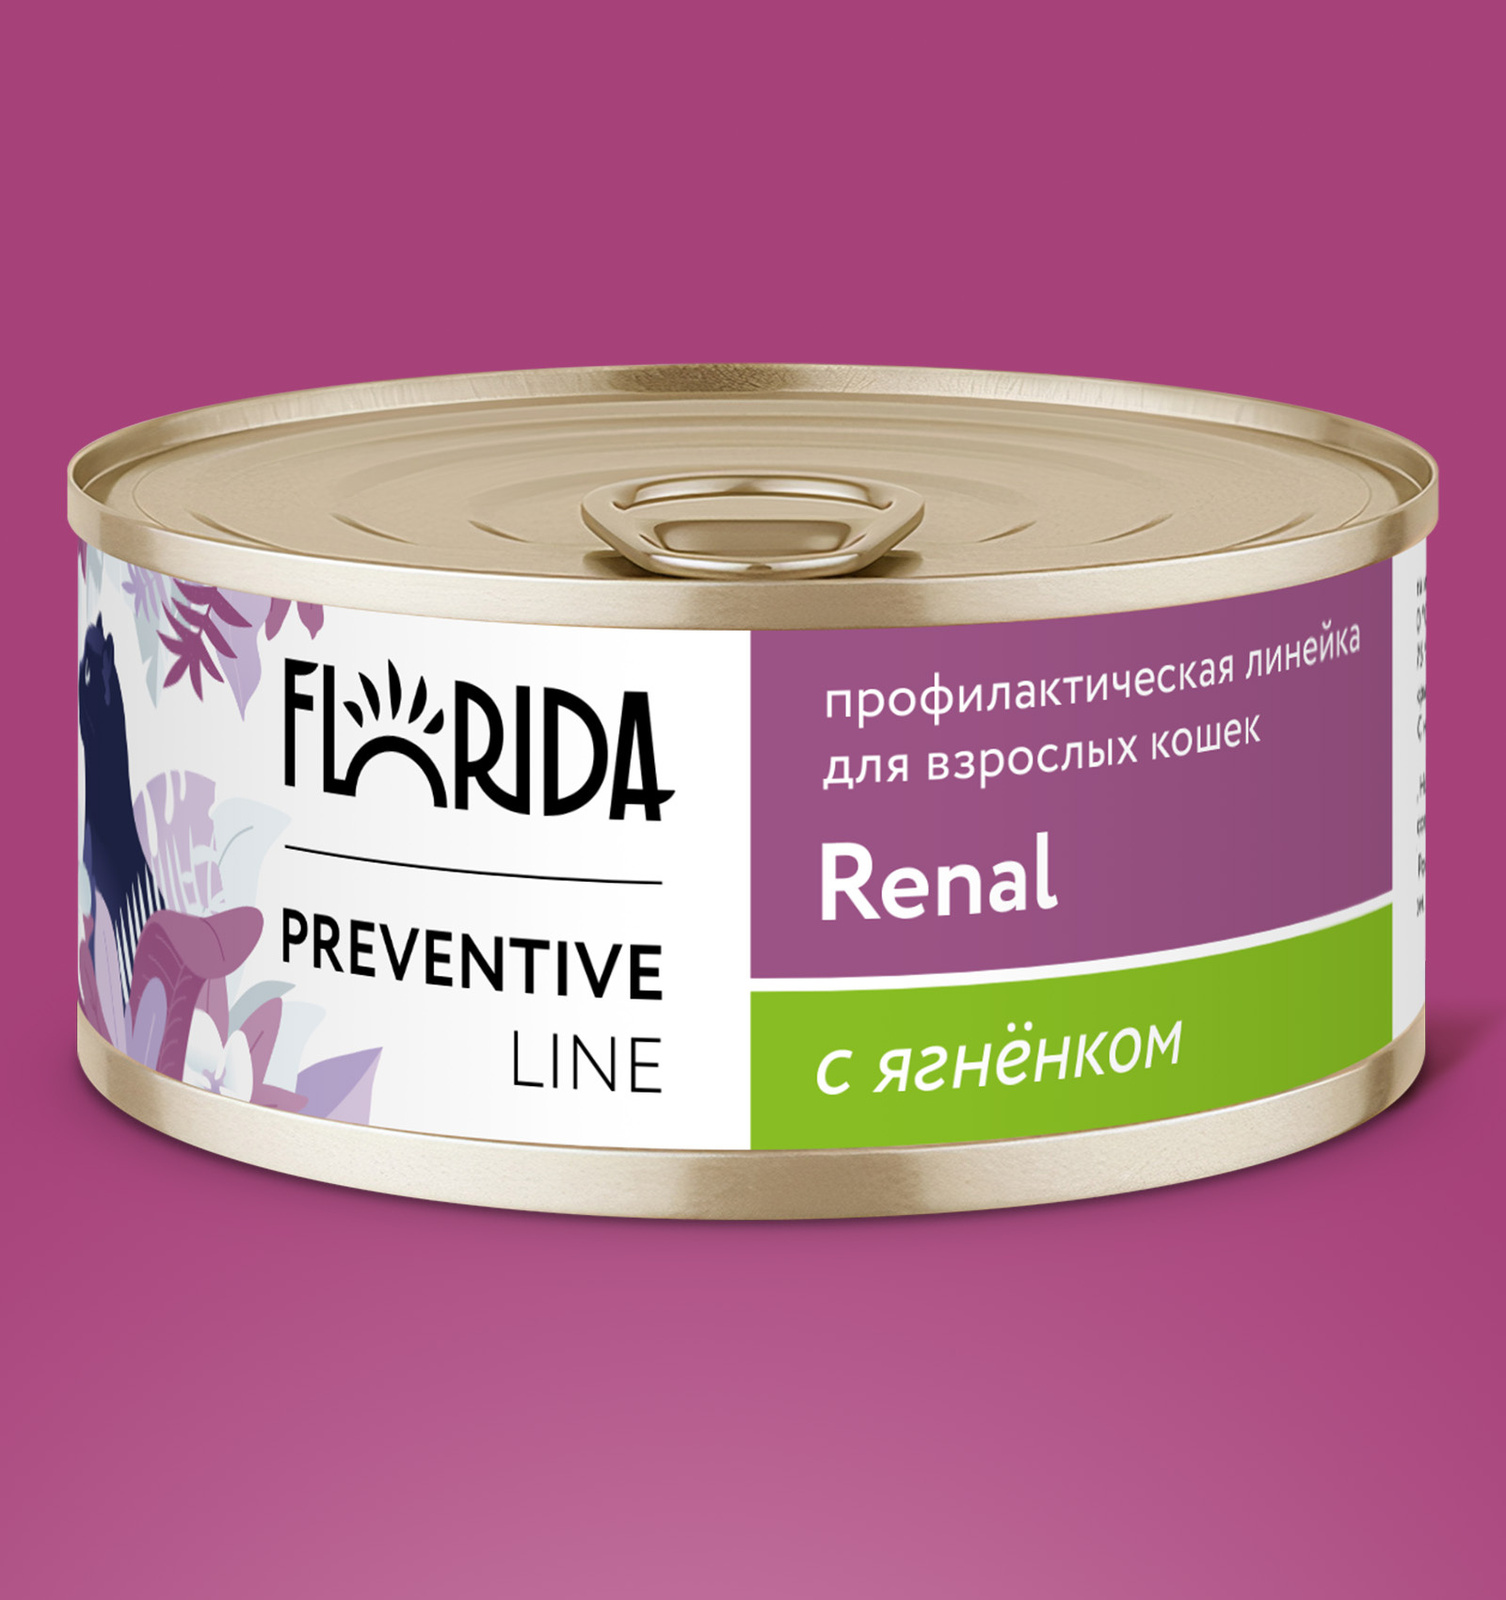 Florida Preventive Line консервы renal Консервы для кошек. 